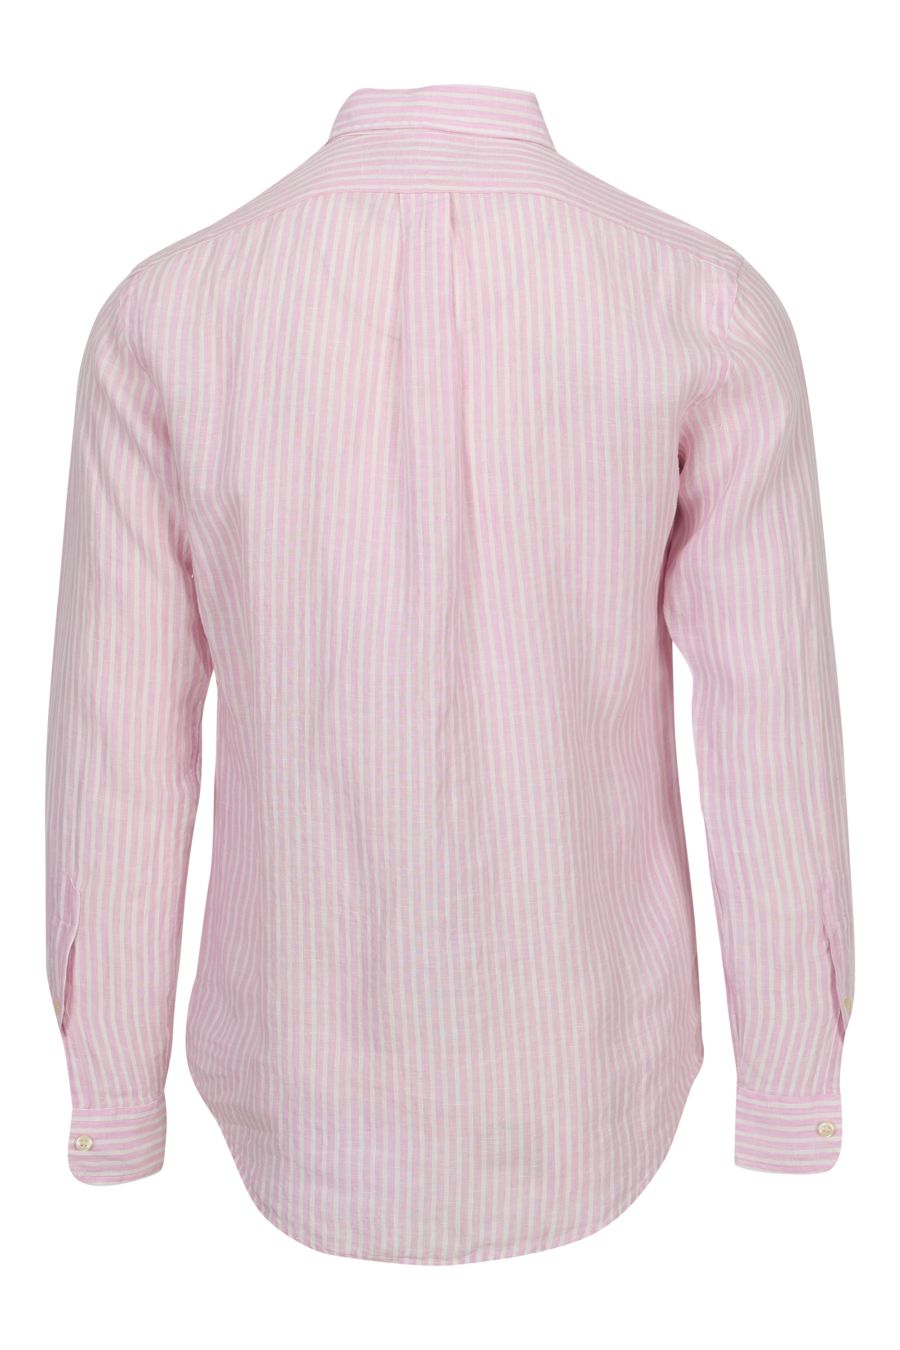 Camisa rosa con lineas blancas y logo "polo" - 3616534011084 1